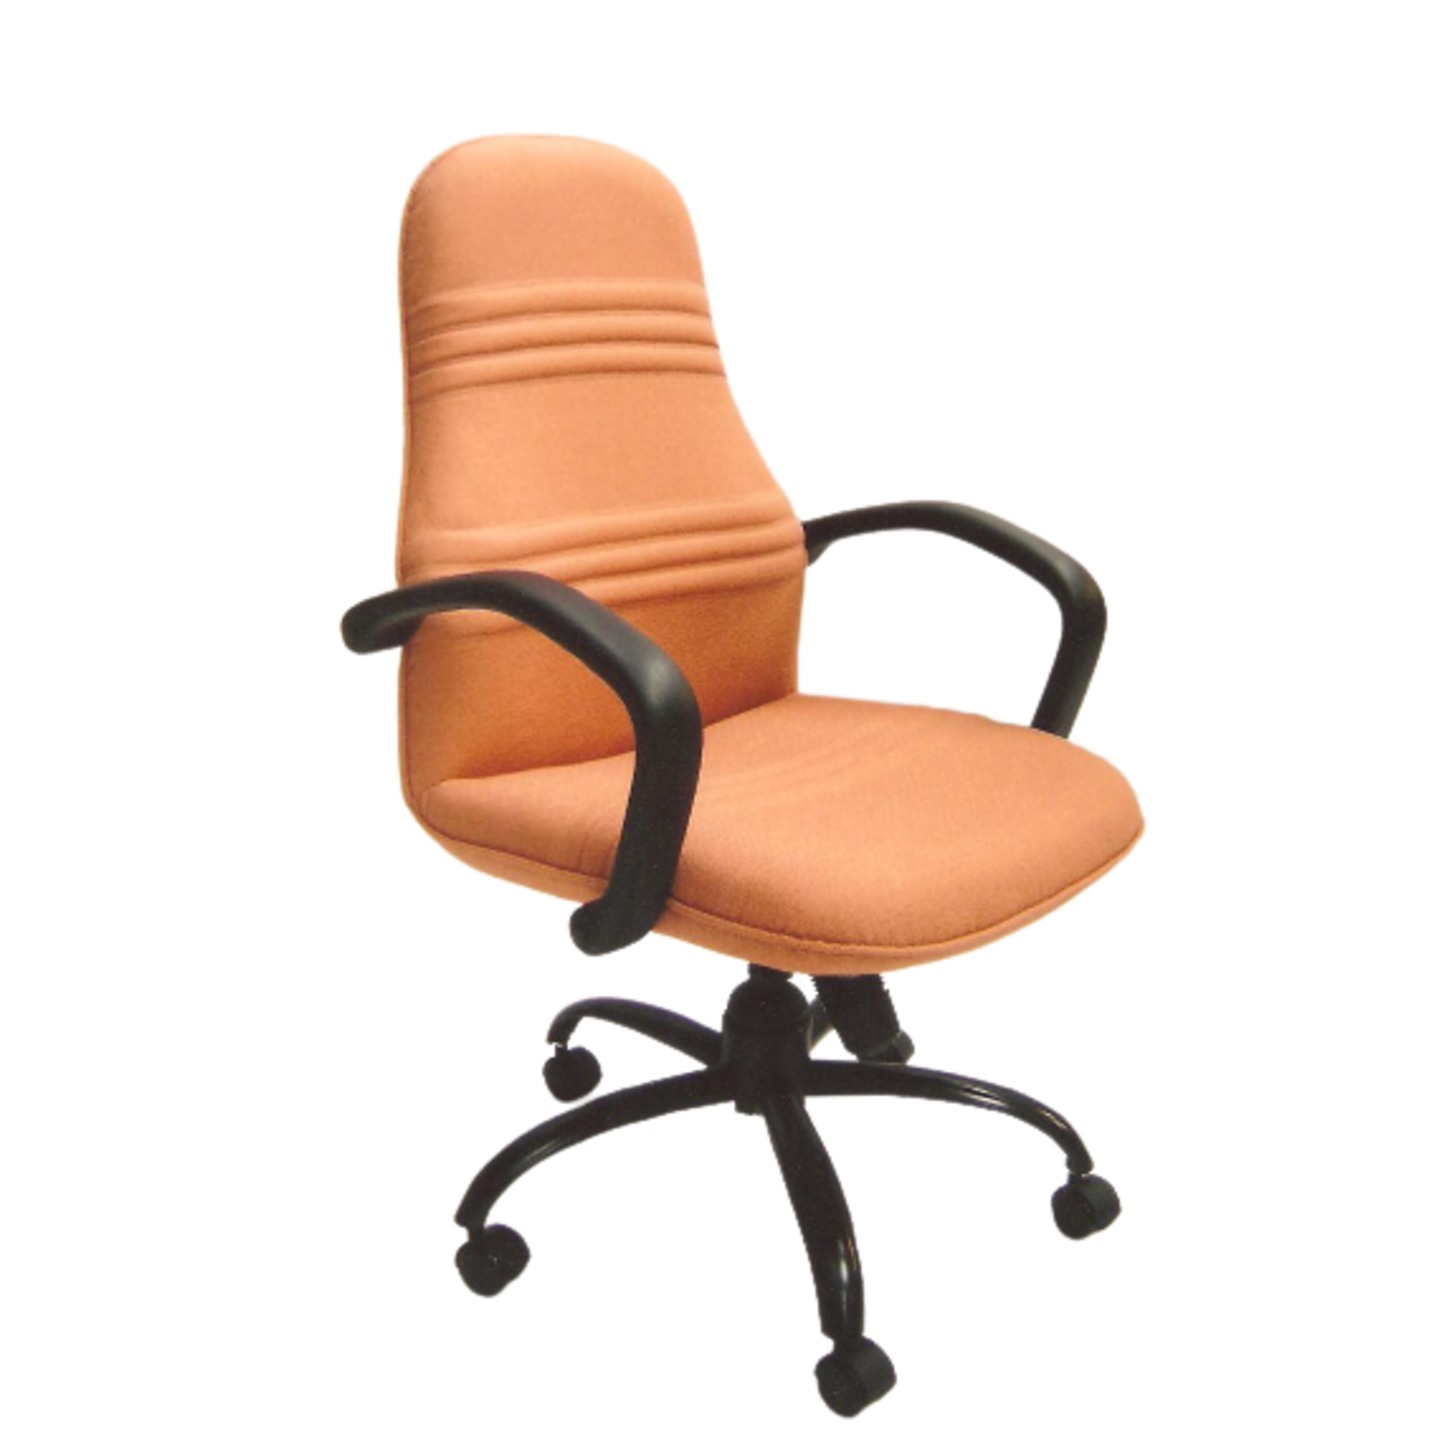 Medium Back Chair DD-302 Manual Mechanism System